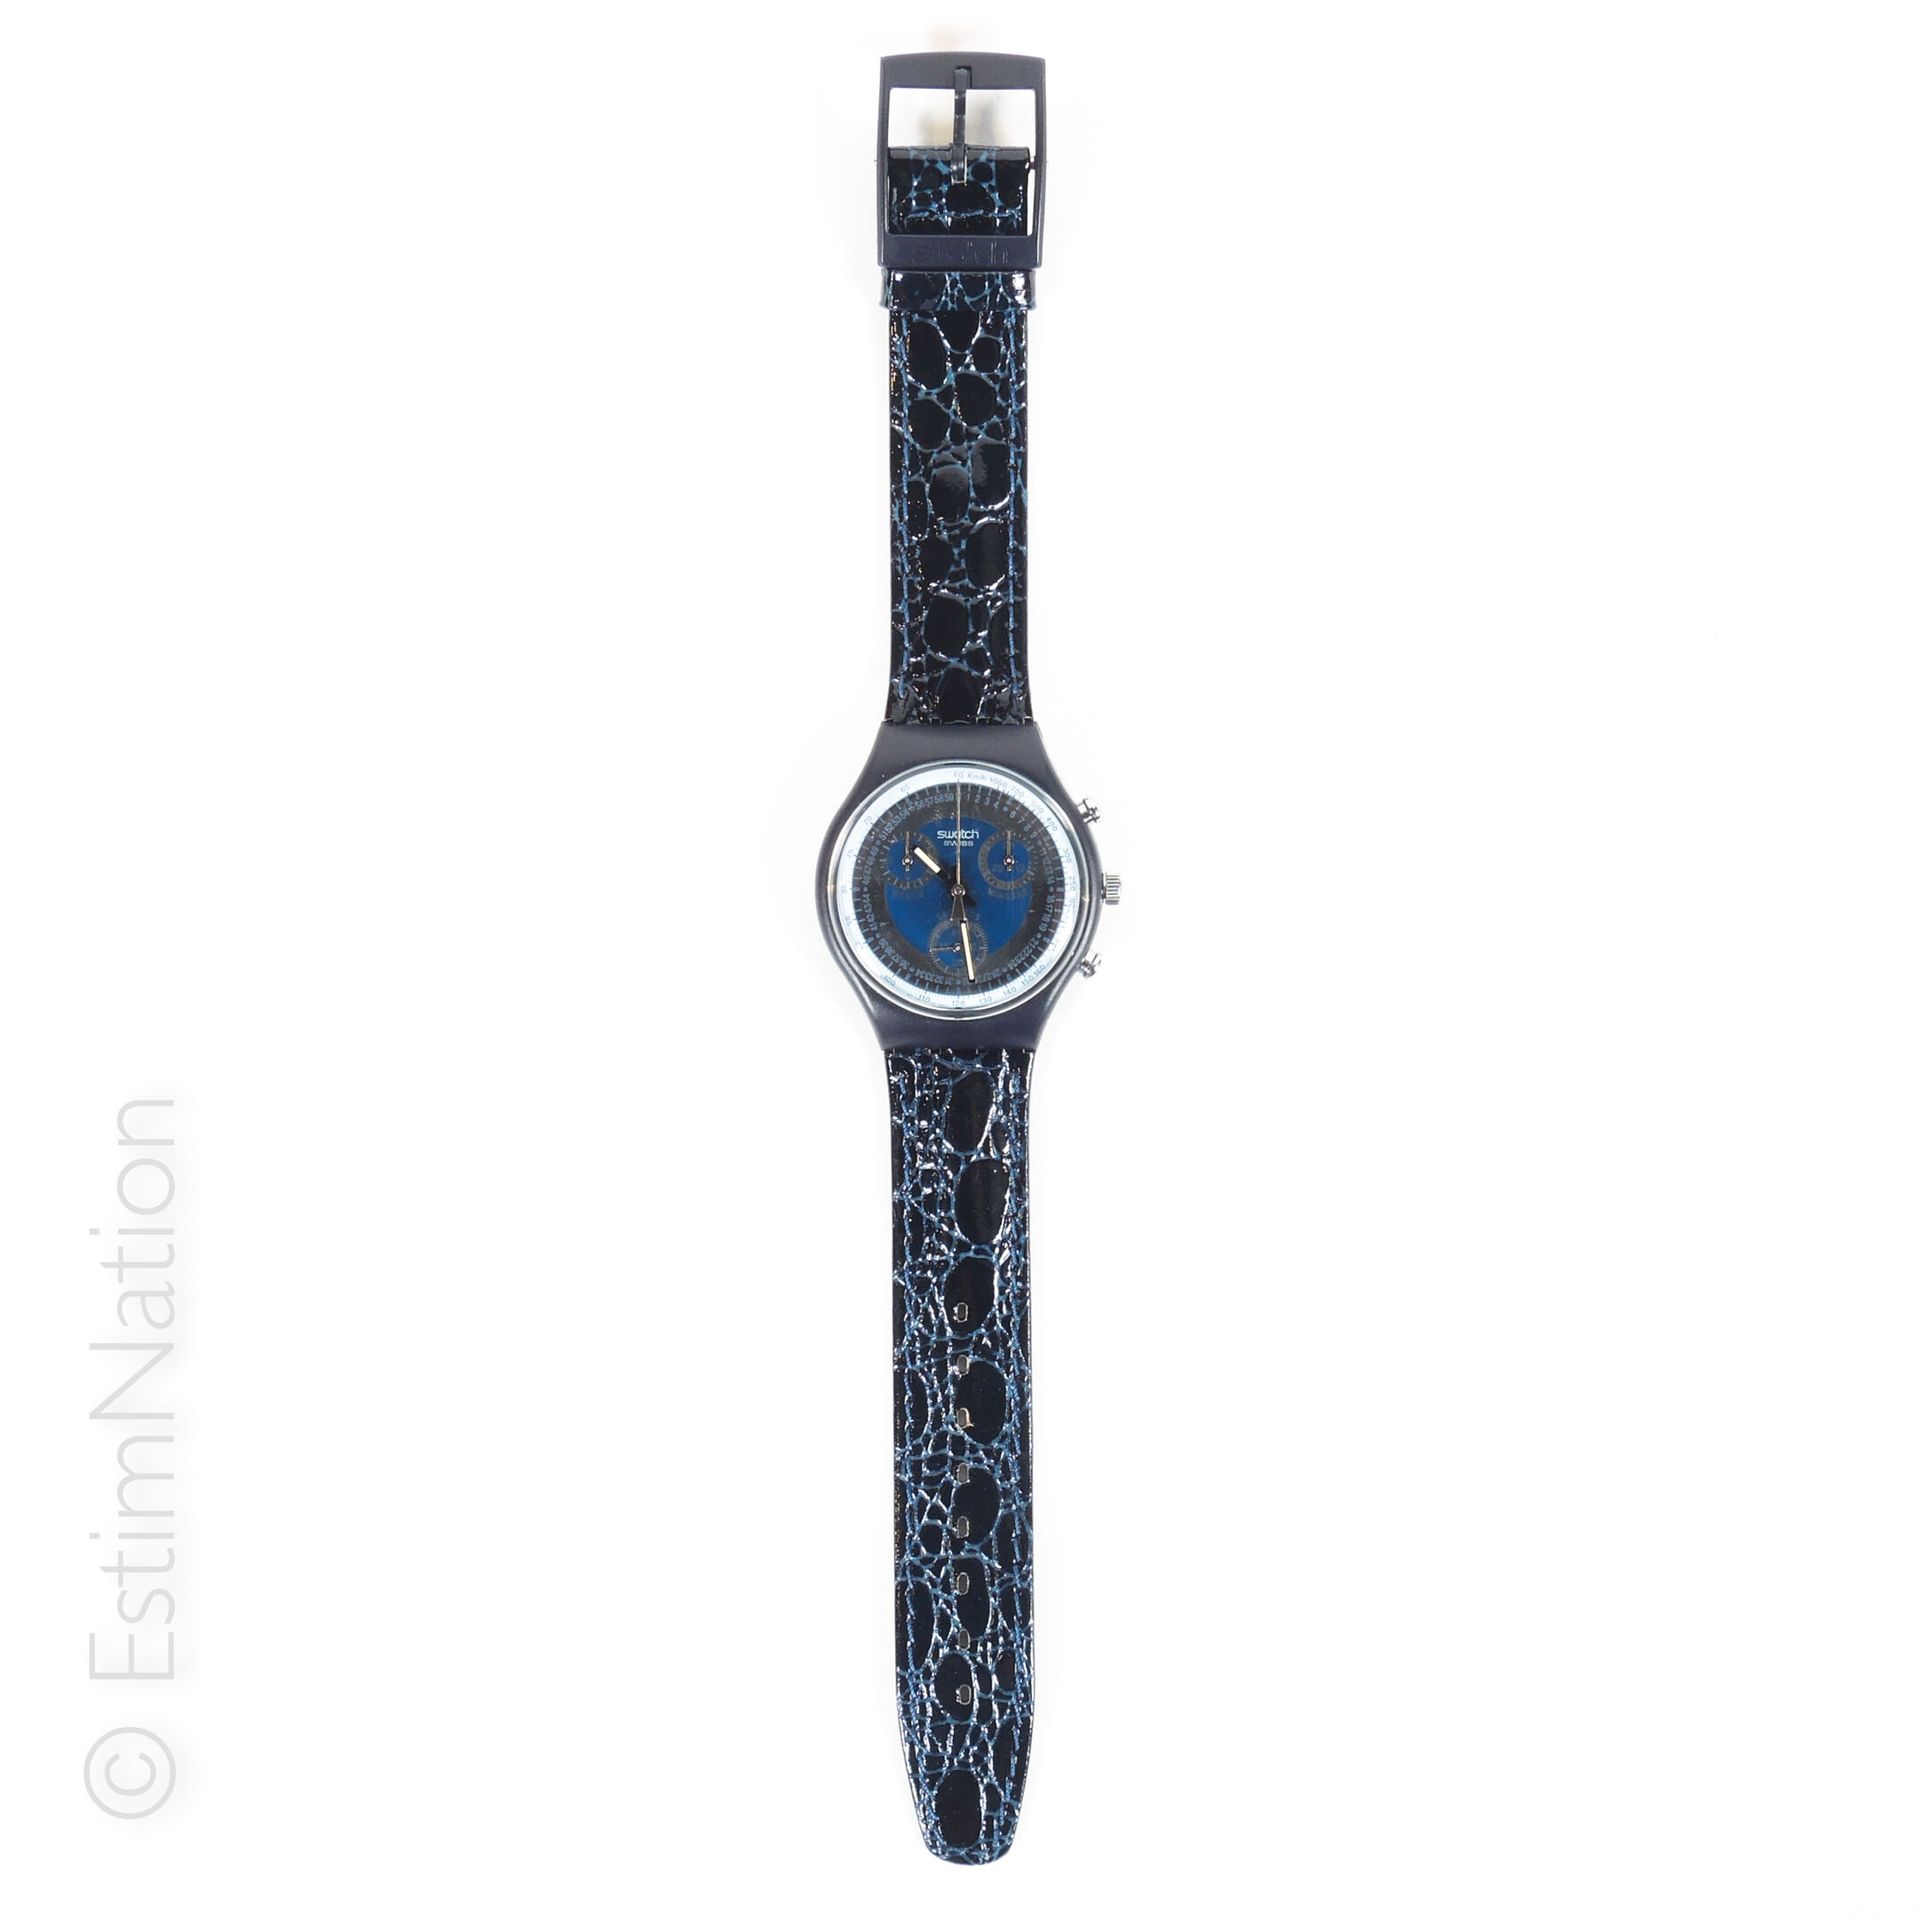 SWATCH - SILVER STAR - 1991 色样 - 银星

塑料收藏品 : 计时器



计时表，蓝色和银色表盘，黑色塑料表壳，海军仿皮表带和皮革&hellip;